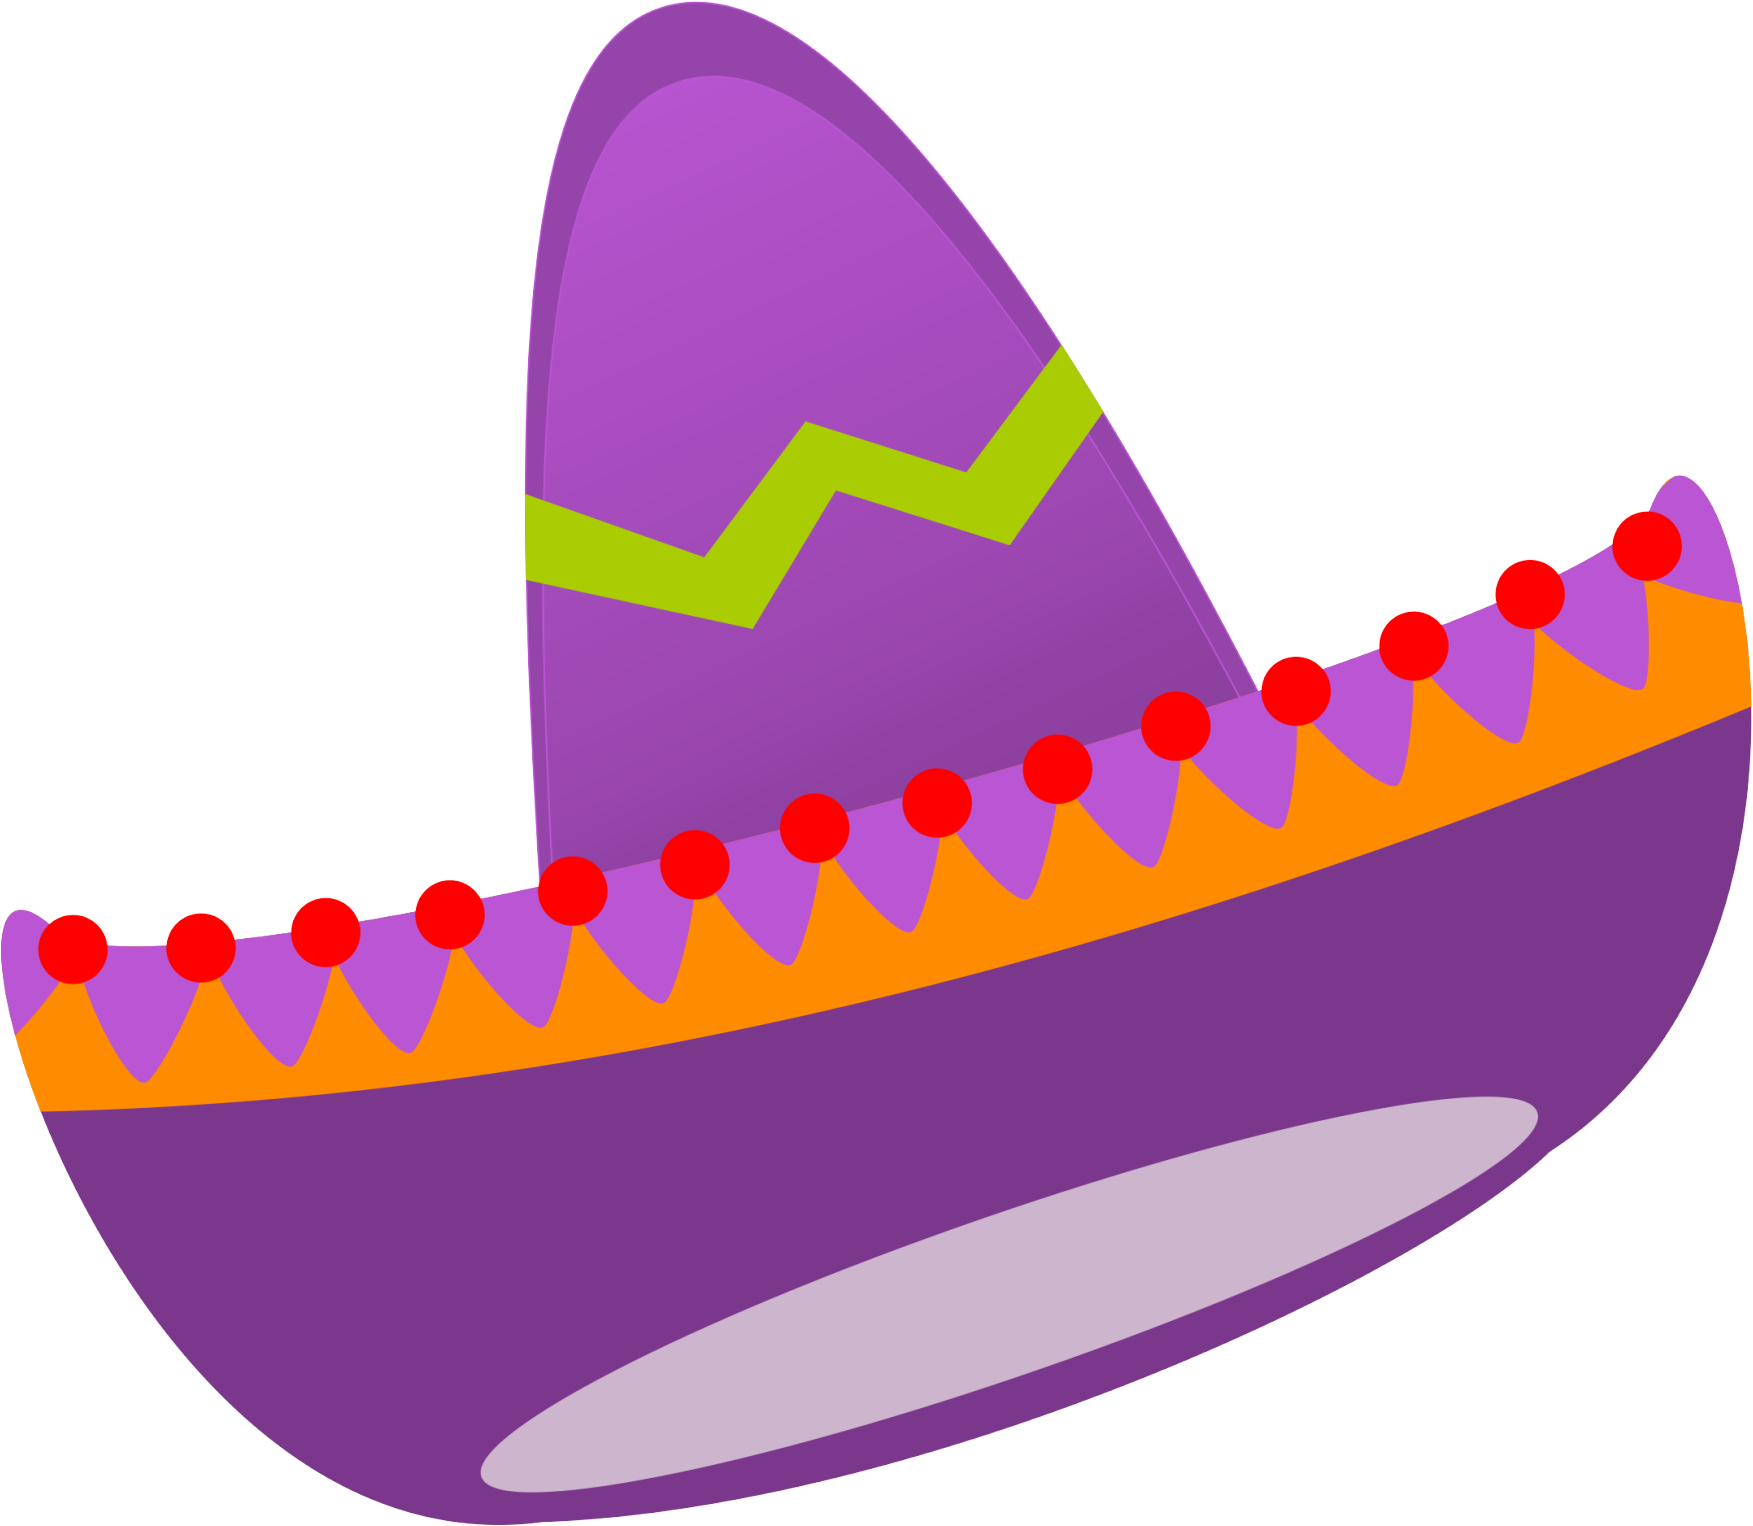 Viva Mexico, Mexican Fiesta Party, September, Mexicans - Viva Mexico, Mexican Fiesta Party, September, Mexicans (1753x1526)